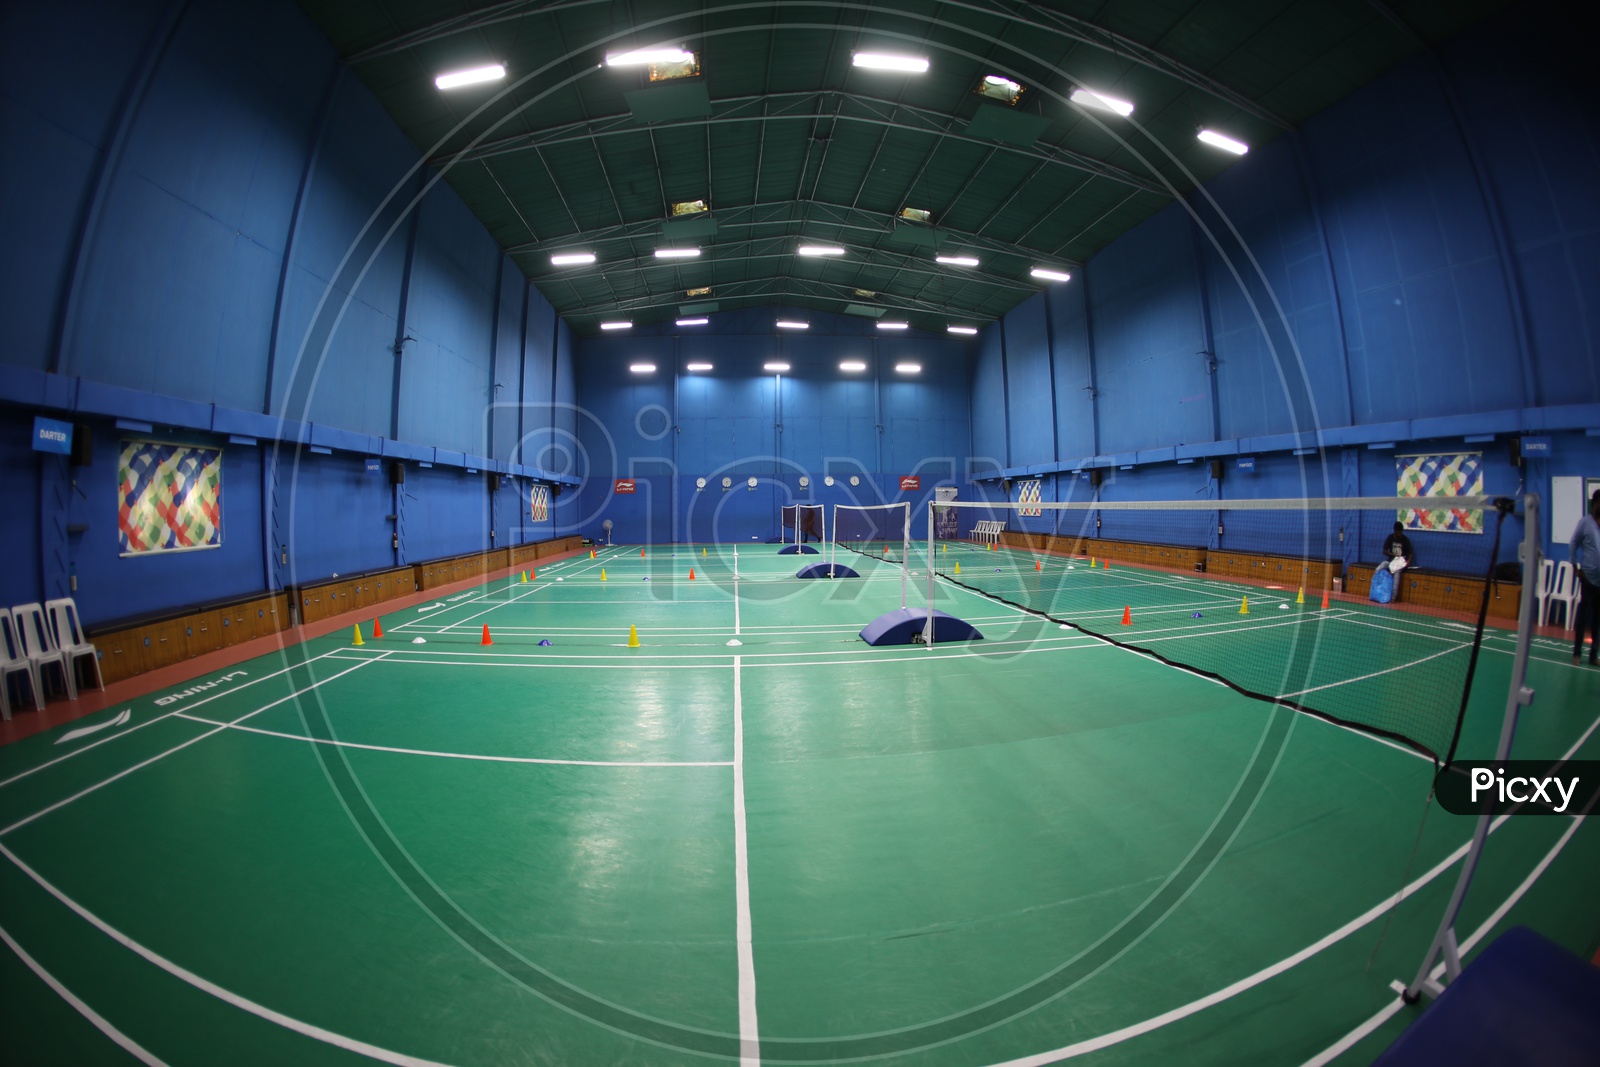 Shuttle Badminton Indoor Synthetic Court